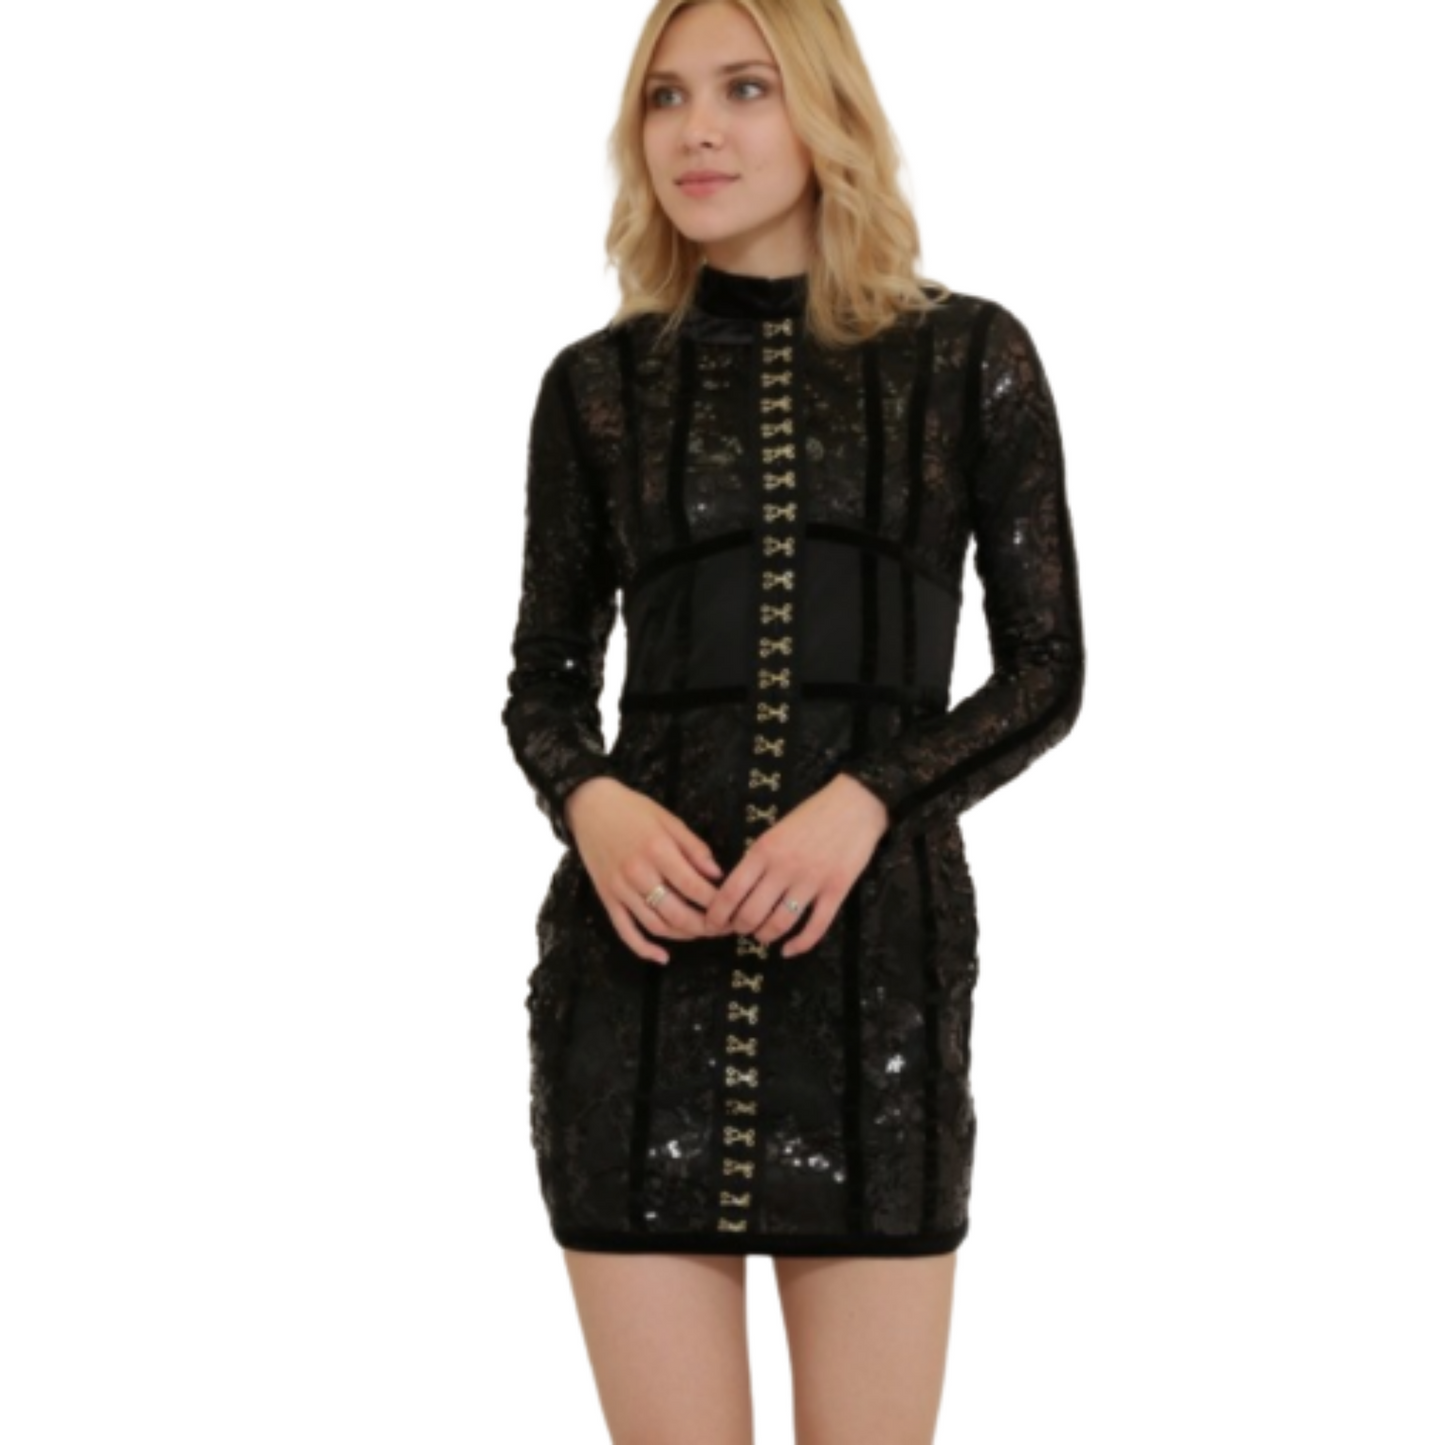 Xtaren Sequin Dress Black or Burgundy (S-L)